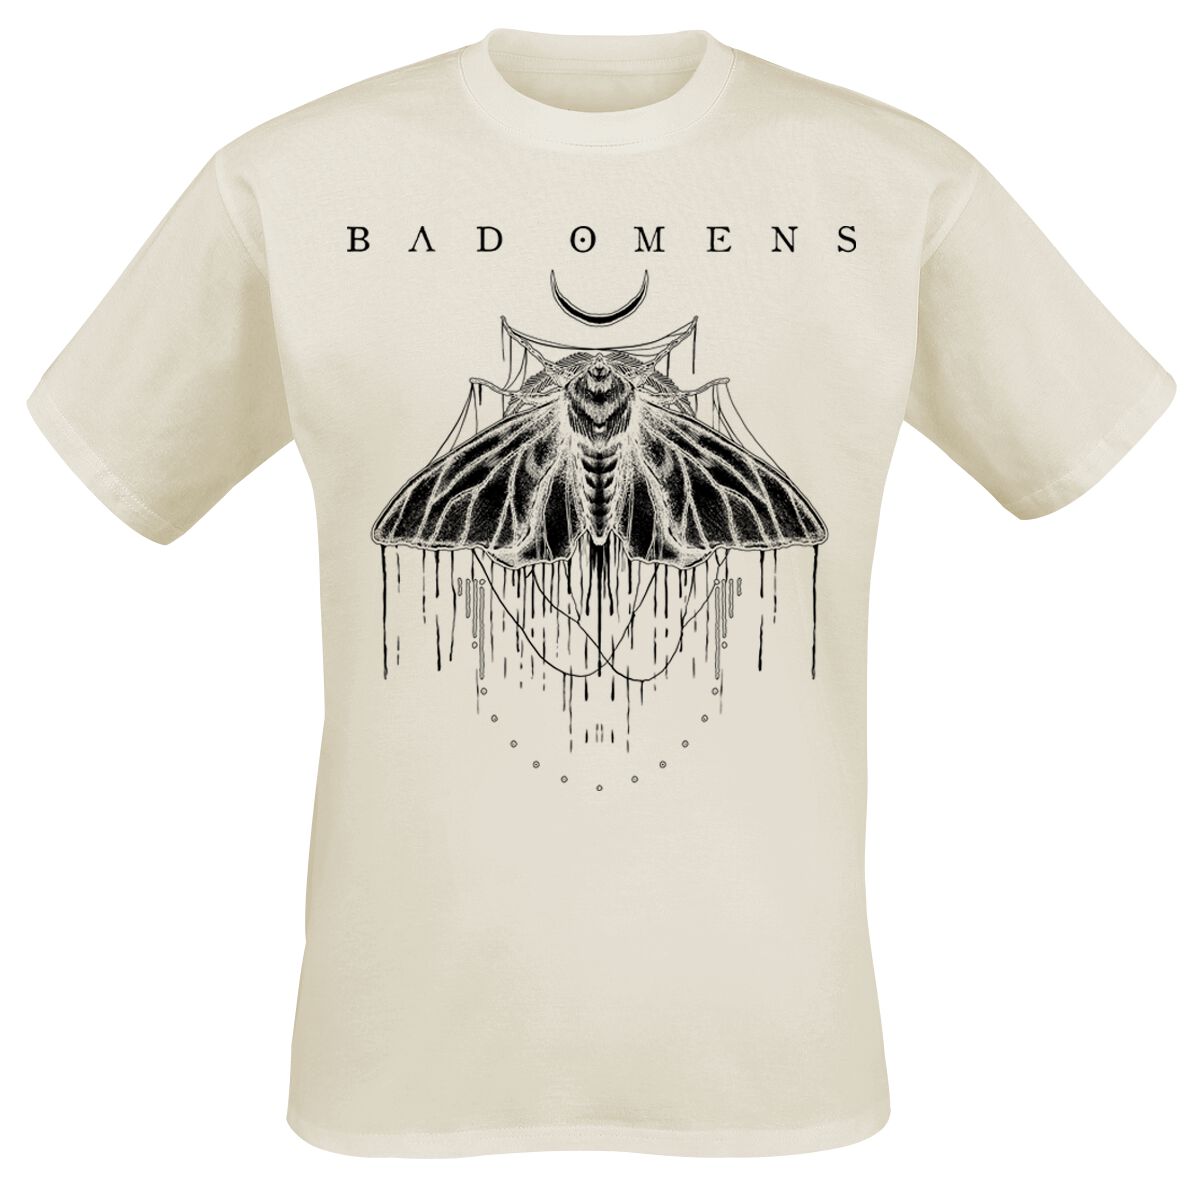 Bad Omens T-Shirt - Moth - 3XL bis 4XL - für Männer - Größe 4XL - creme  - Lizenziertes Merchandise!